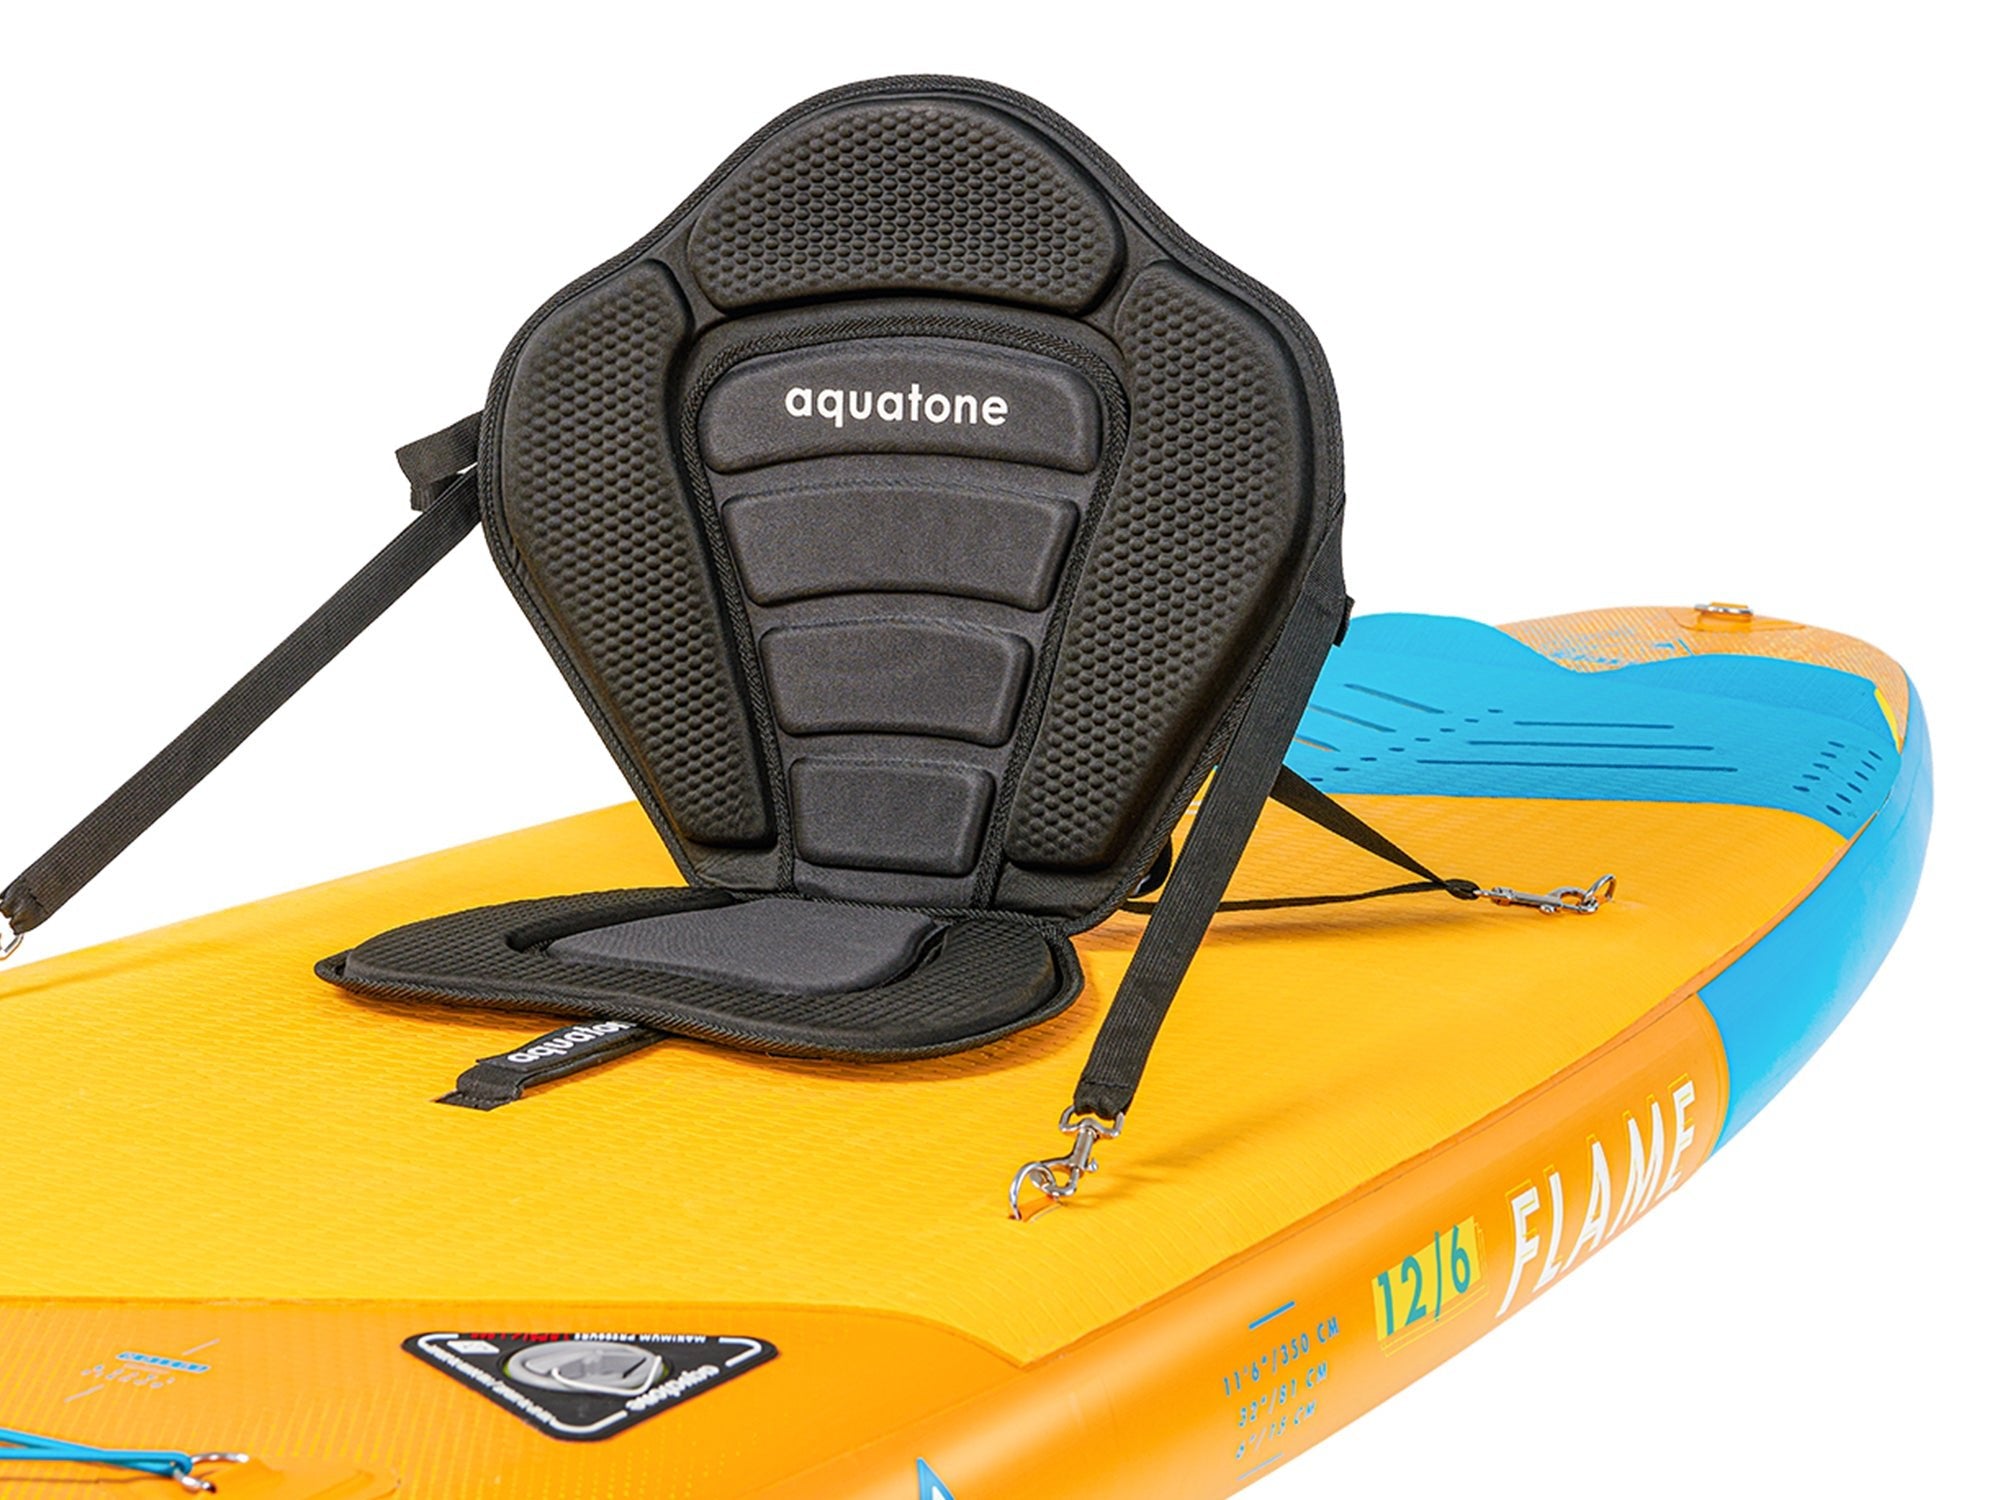 Aquatone 12' 6" Flame Touring SUP-Paddleboards-Aquatone-11